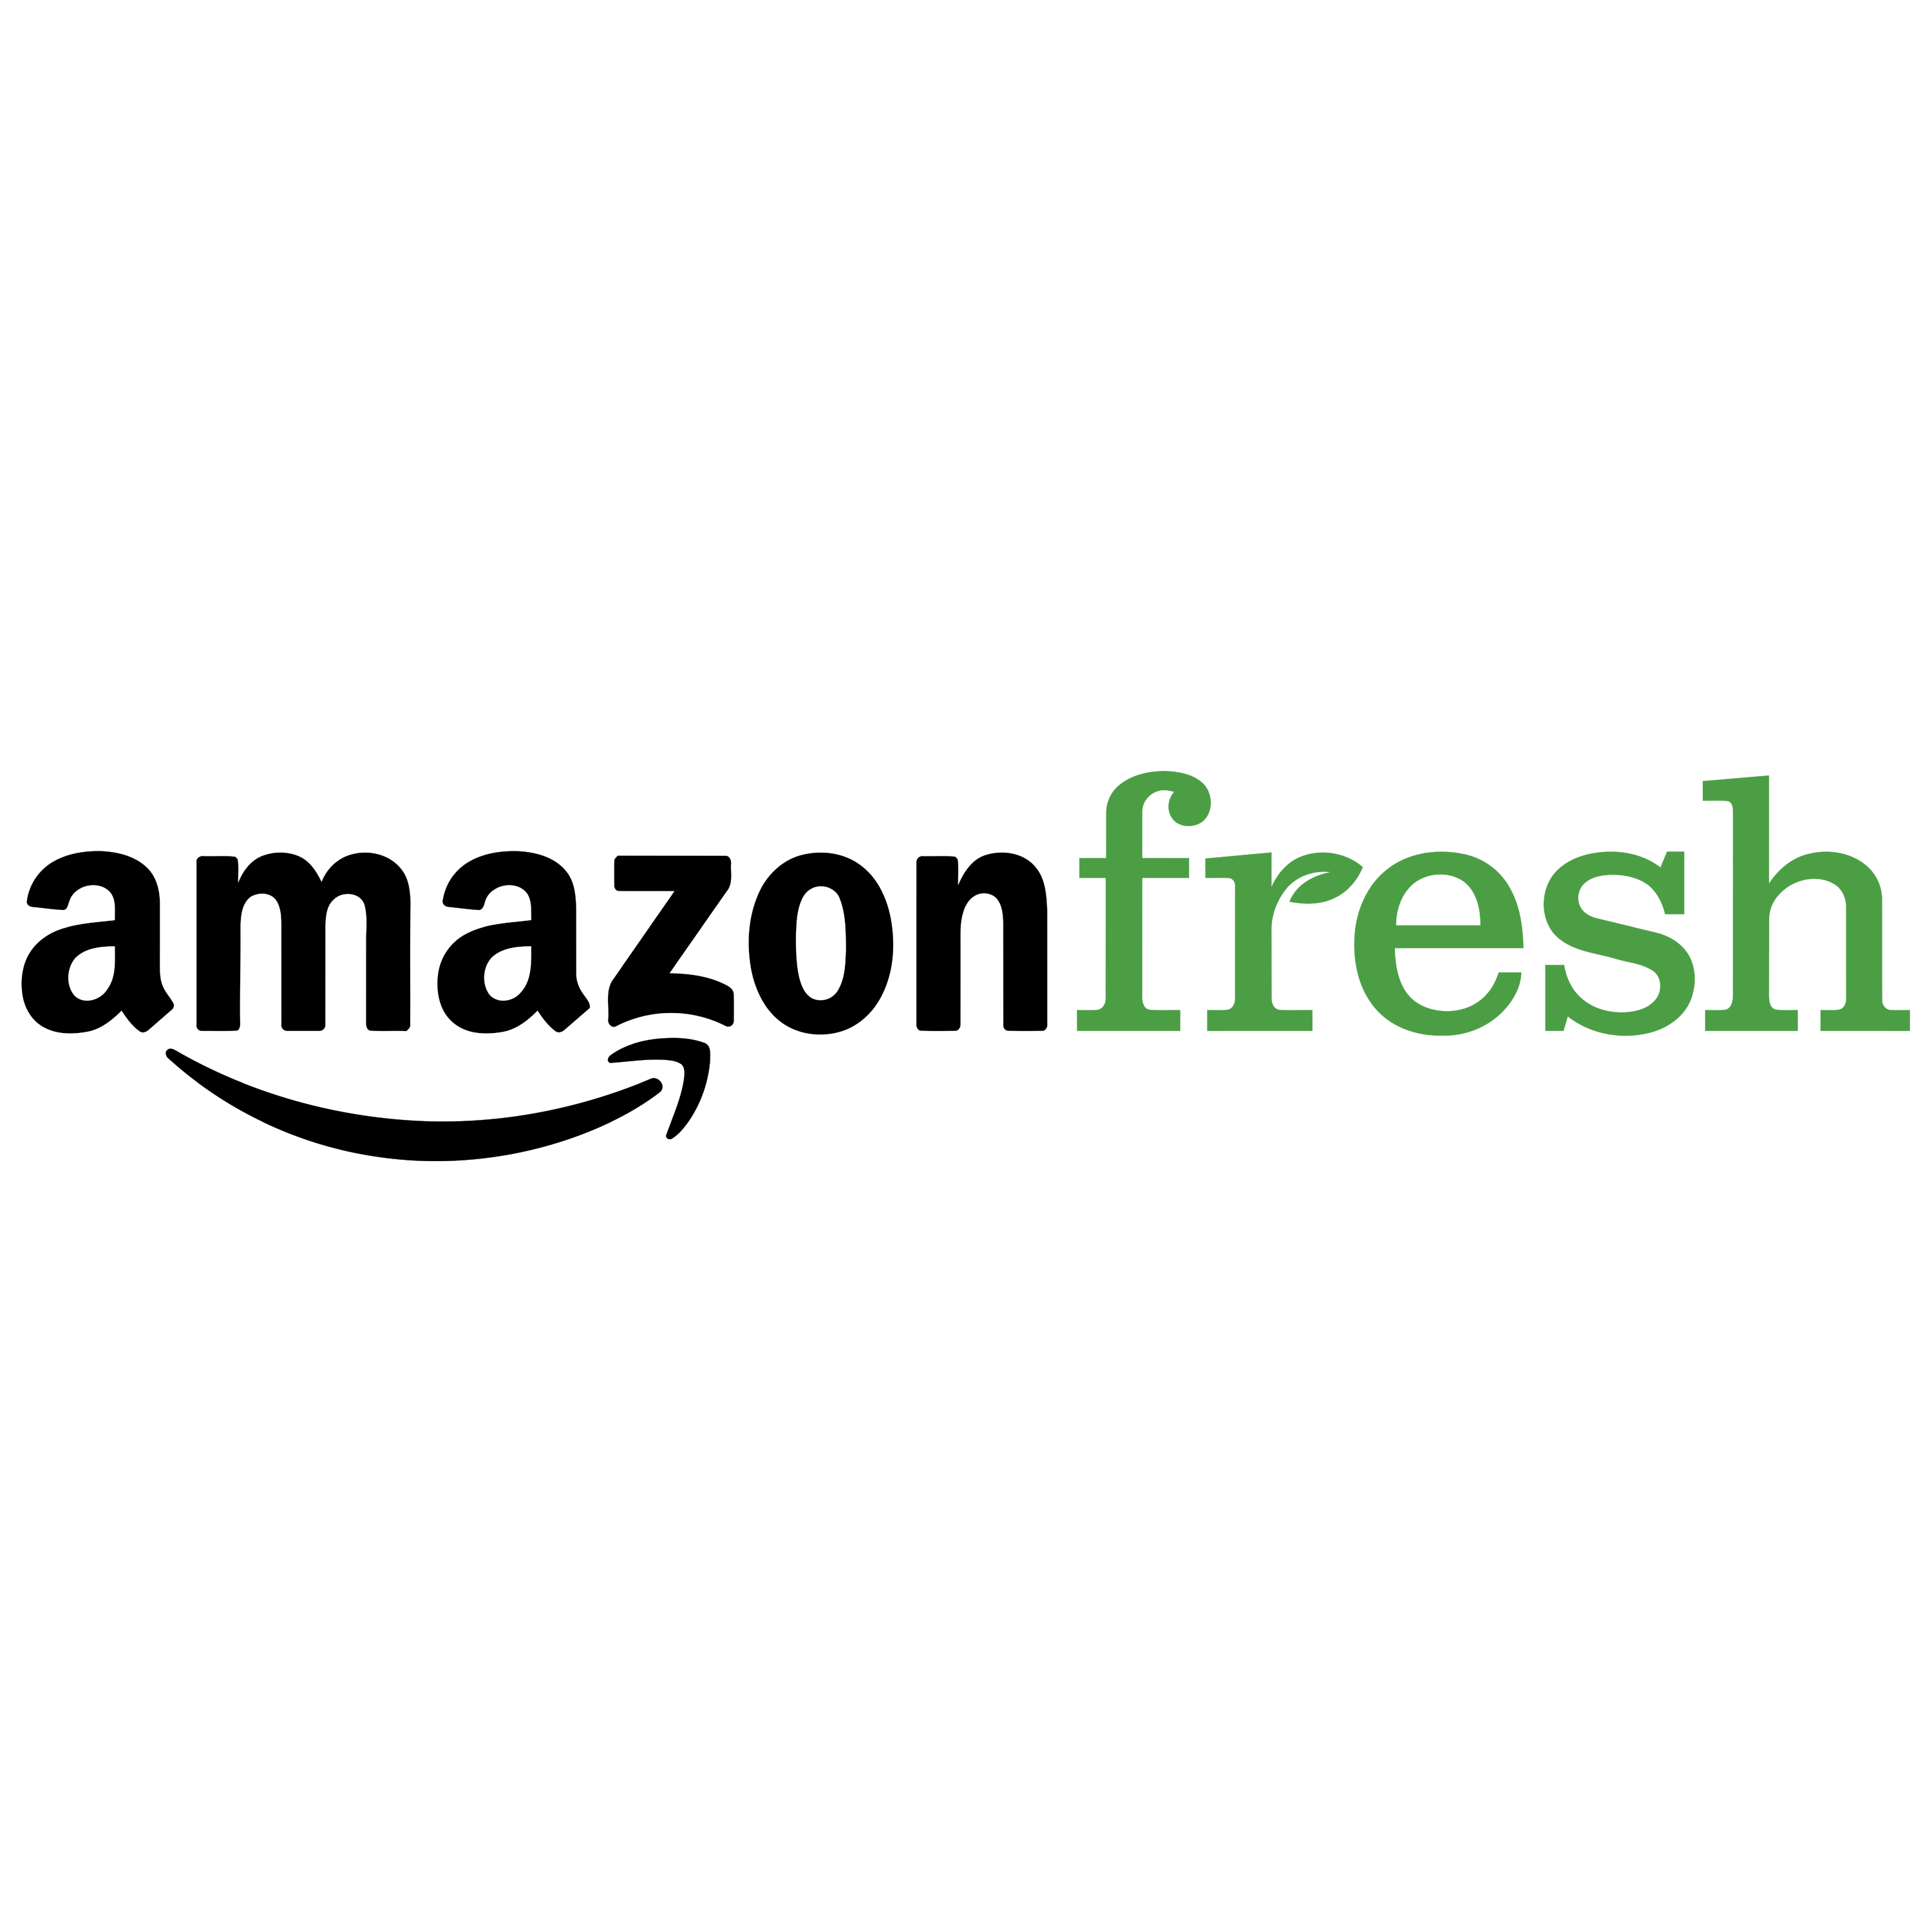 Amazon Fresh Logo Transparent Image